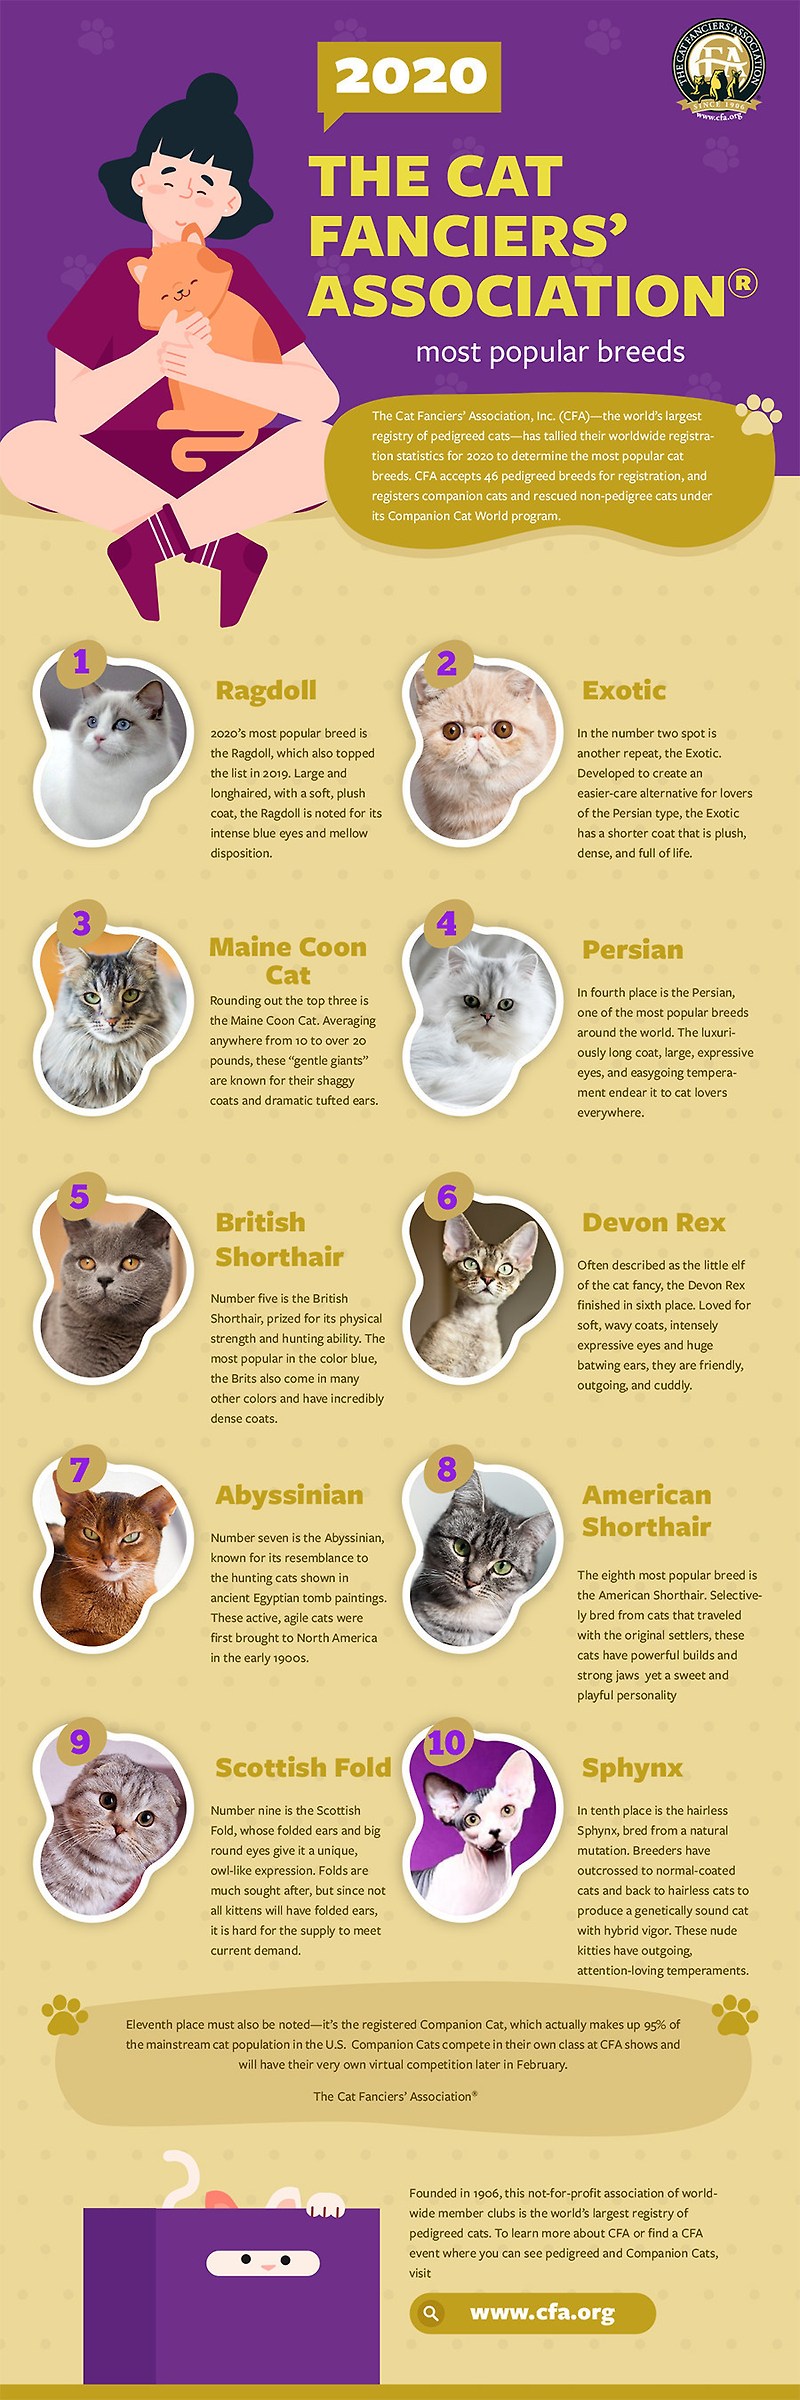 국제고양이애호가협회(CFA), 2020년 가장 인기있었던 10가지 고양이 품종 공개